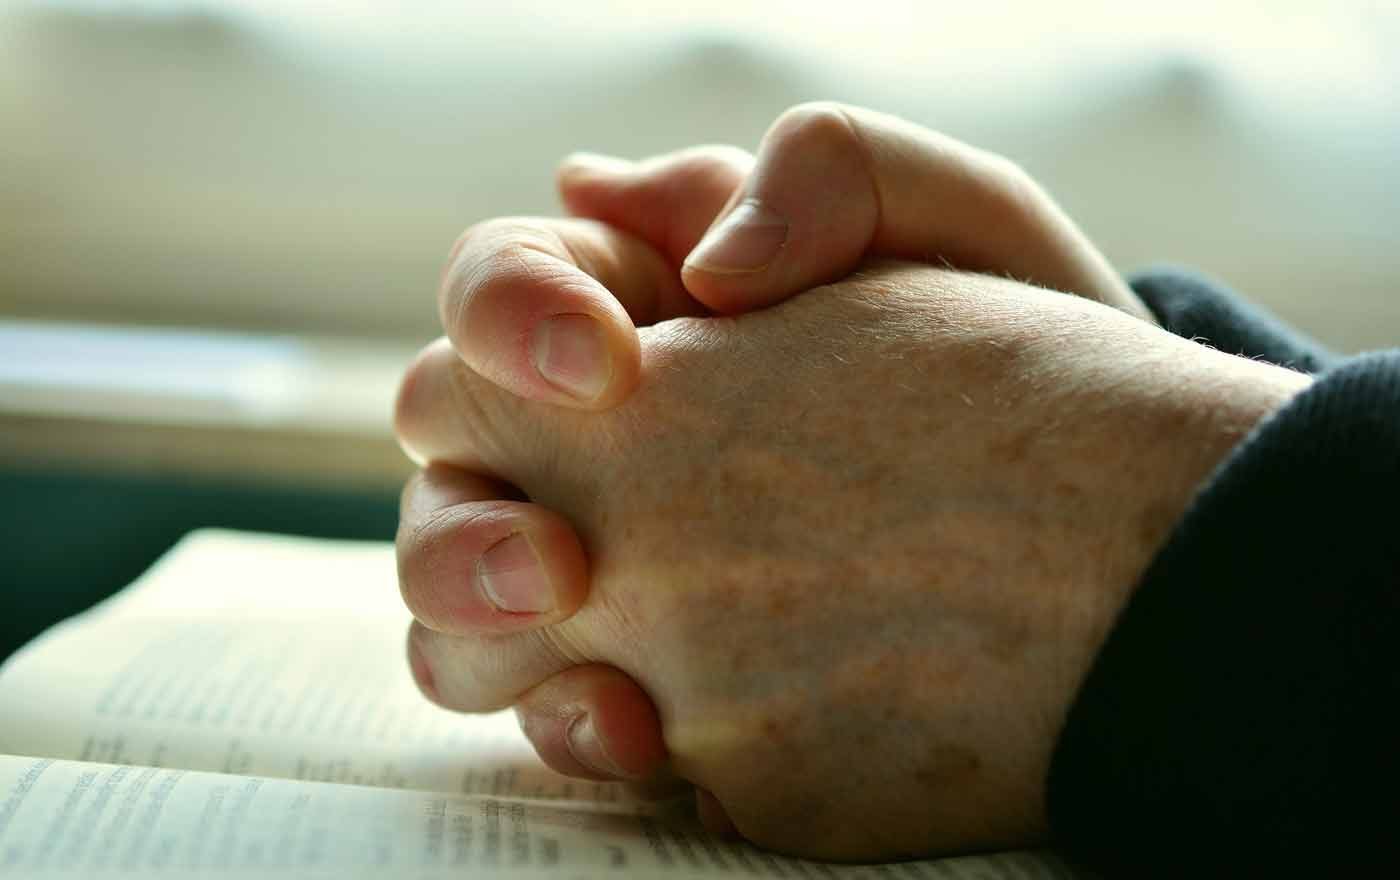 "Die Bibel beauftragt uns, Politikerinnen und Politiker ins Gebet zu nehmen", sagt Bischof Michael Bünker. Foto: pixabay